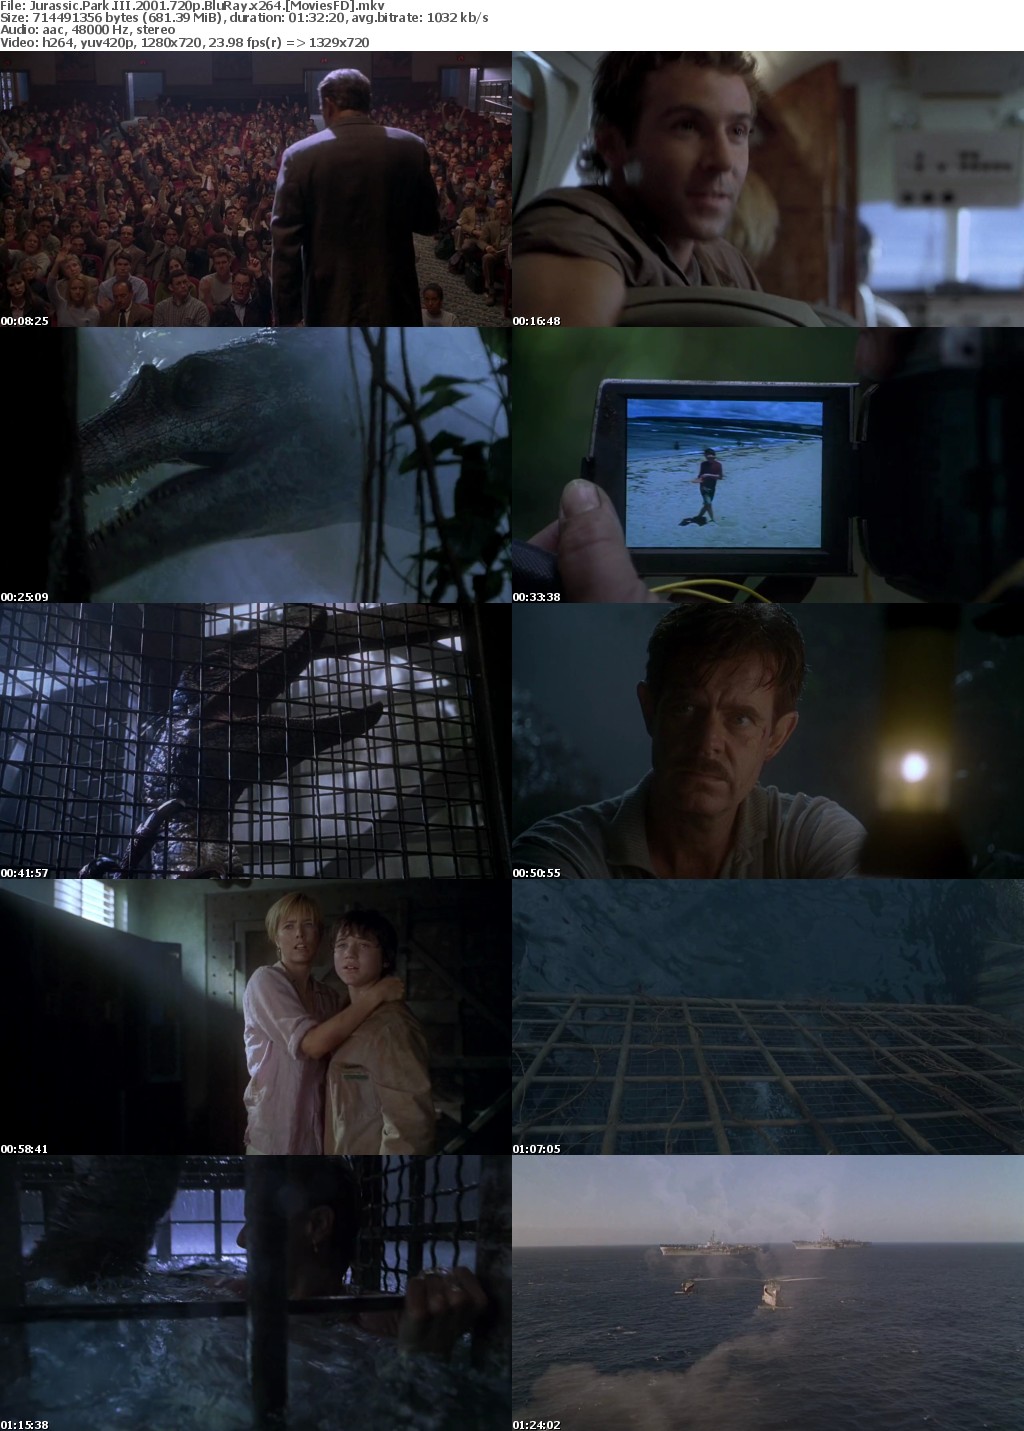 Jurassic Park III 2001 720p BluRay x264 MoviesFD